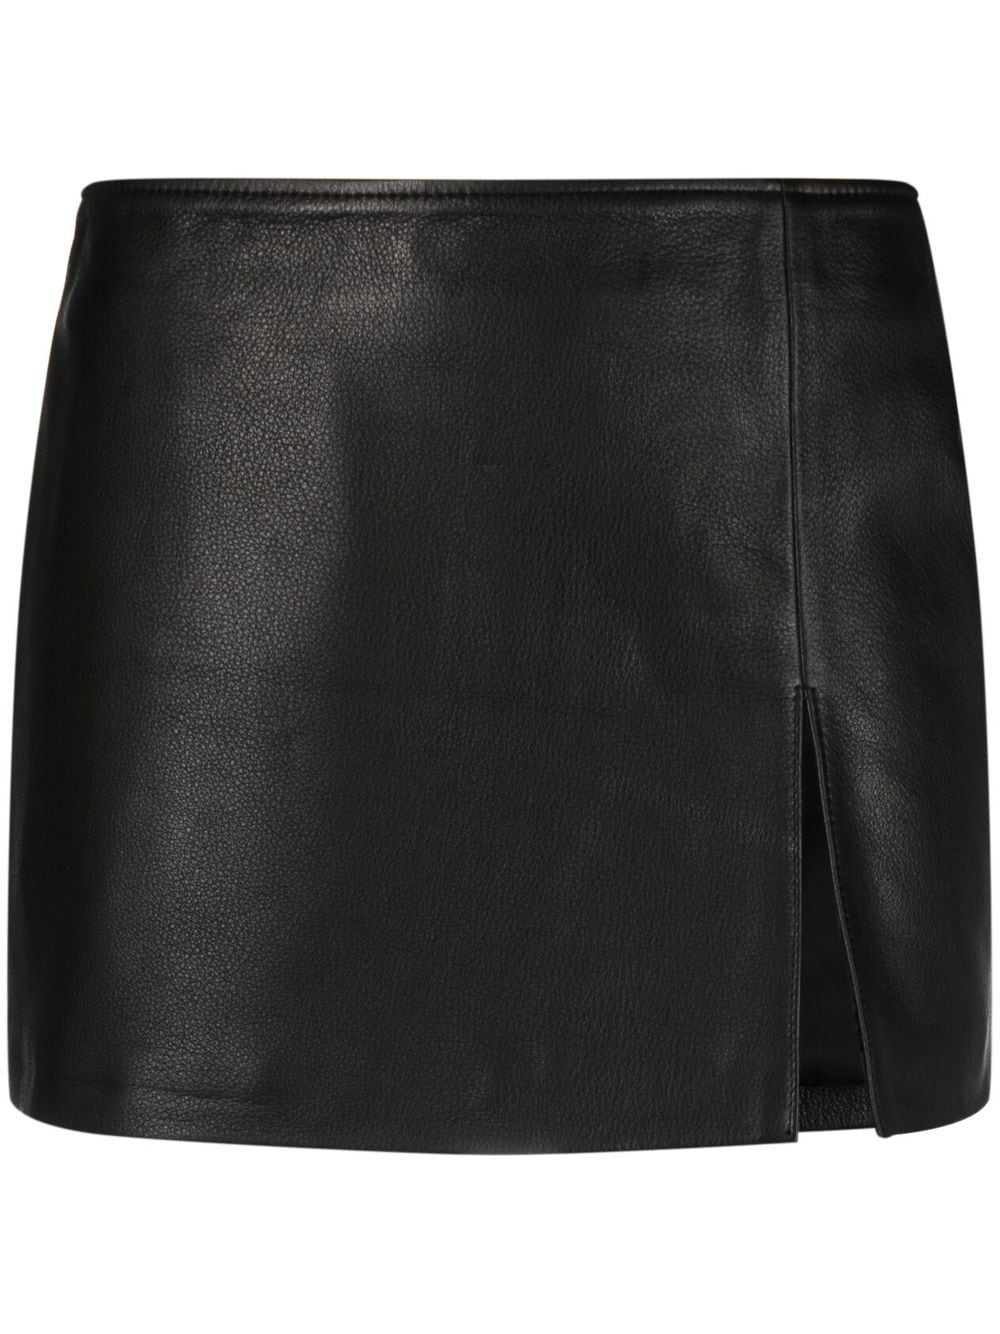 Manokhi leather mini skirt - Black von Manokhi